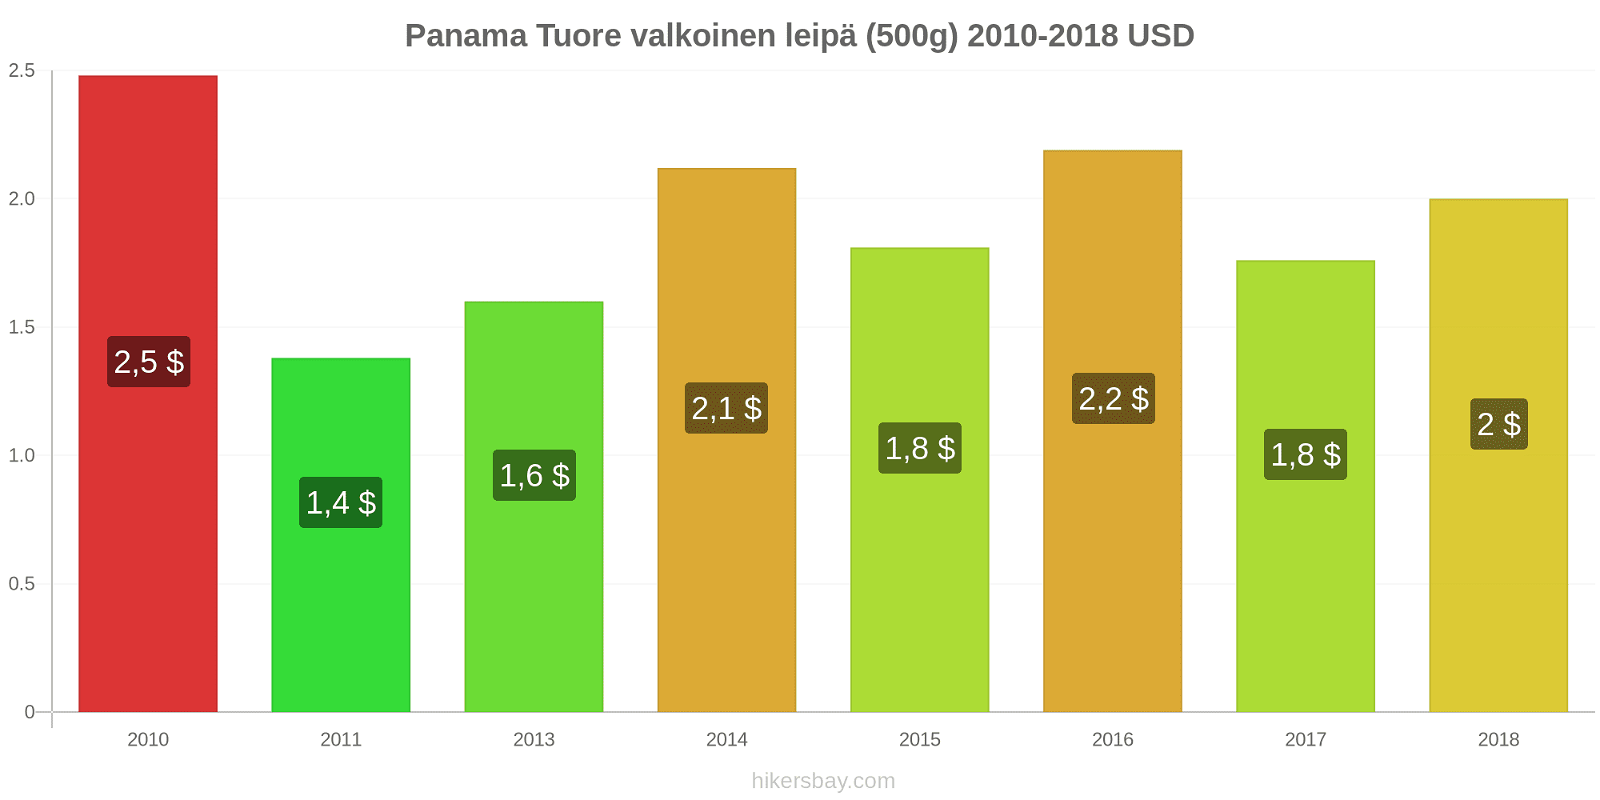 Panama hintojen muutokset Tuore valkoinen leipä (500g) hikersbay.com